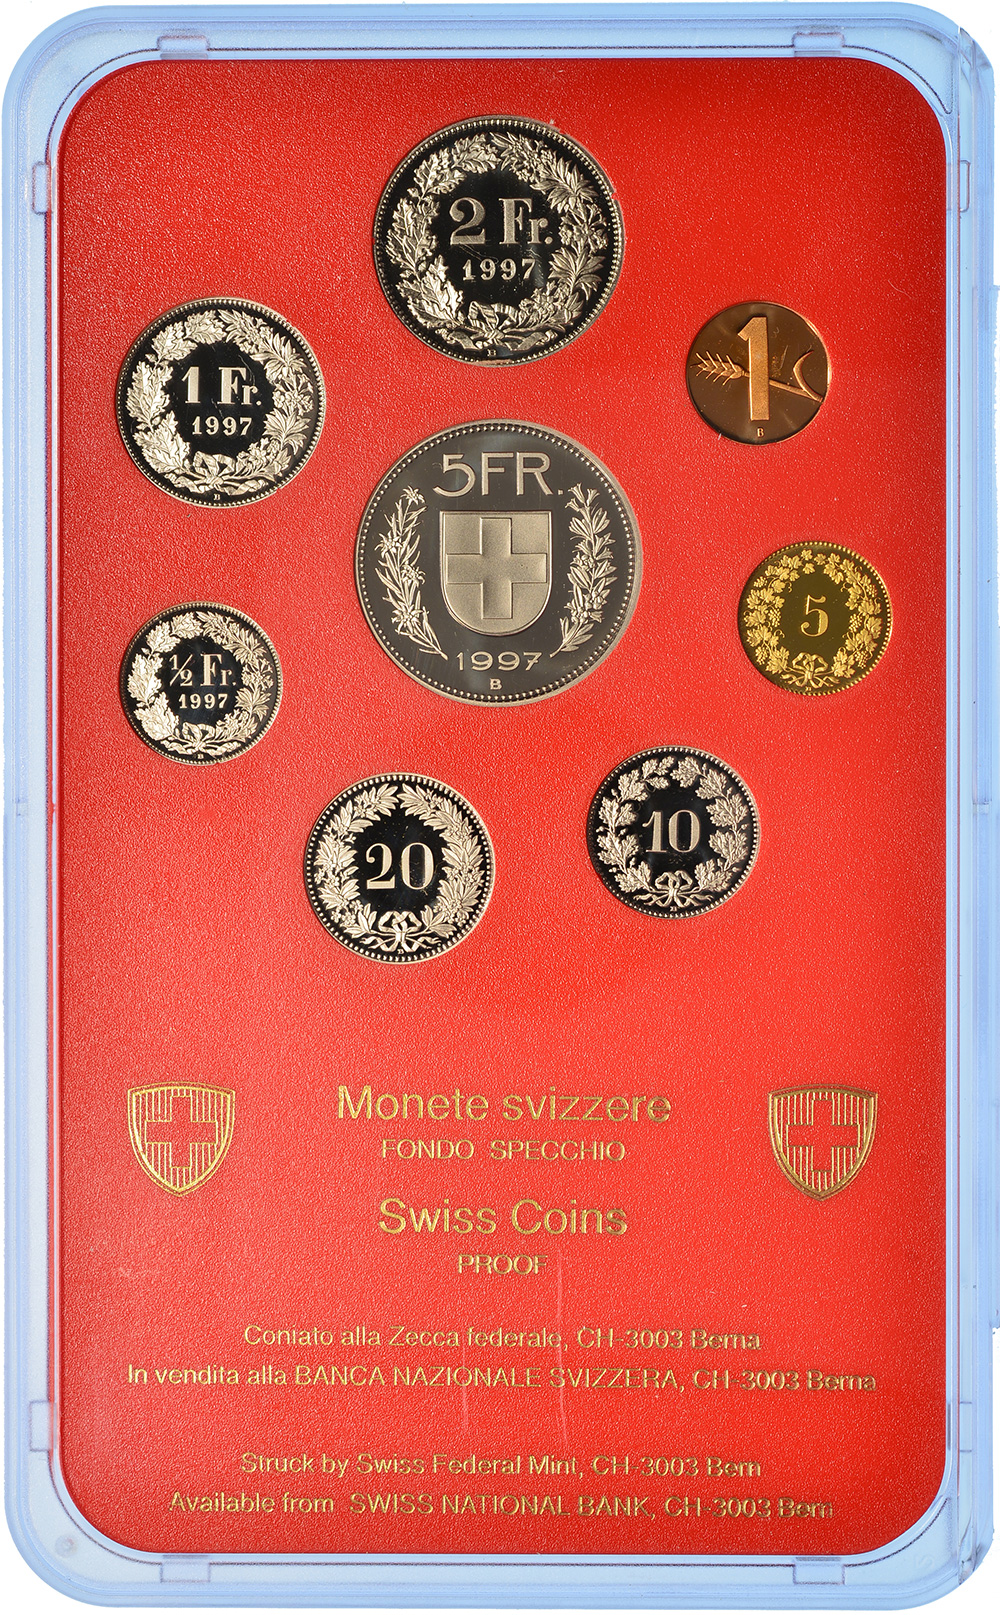 Münzensatz, 1997, Polierte Platte, Kupfer/Nickel